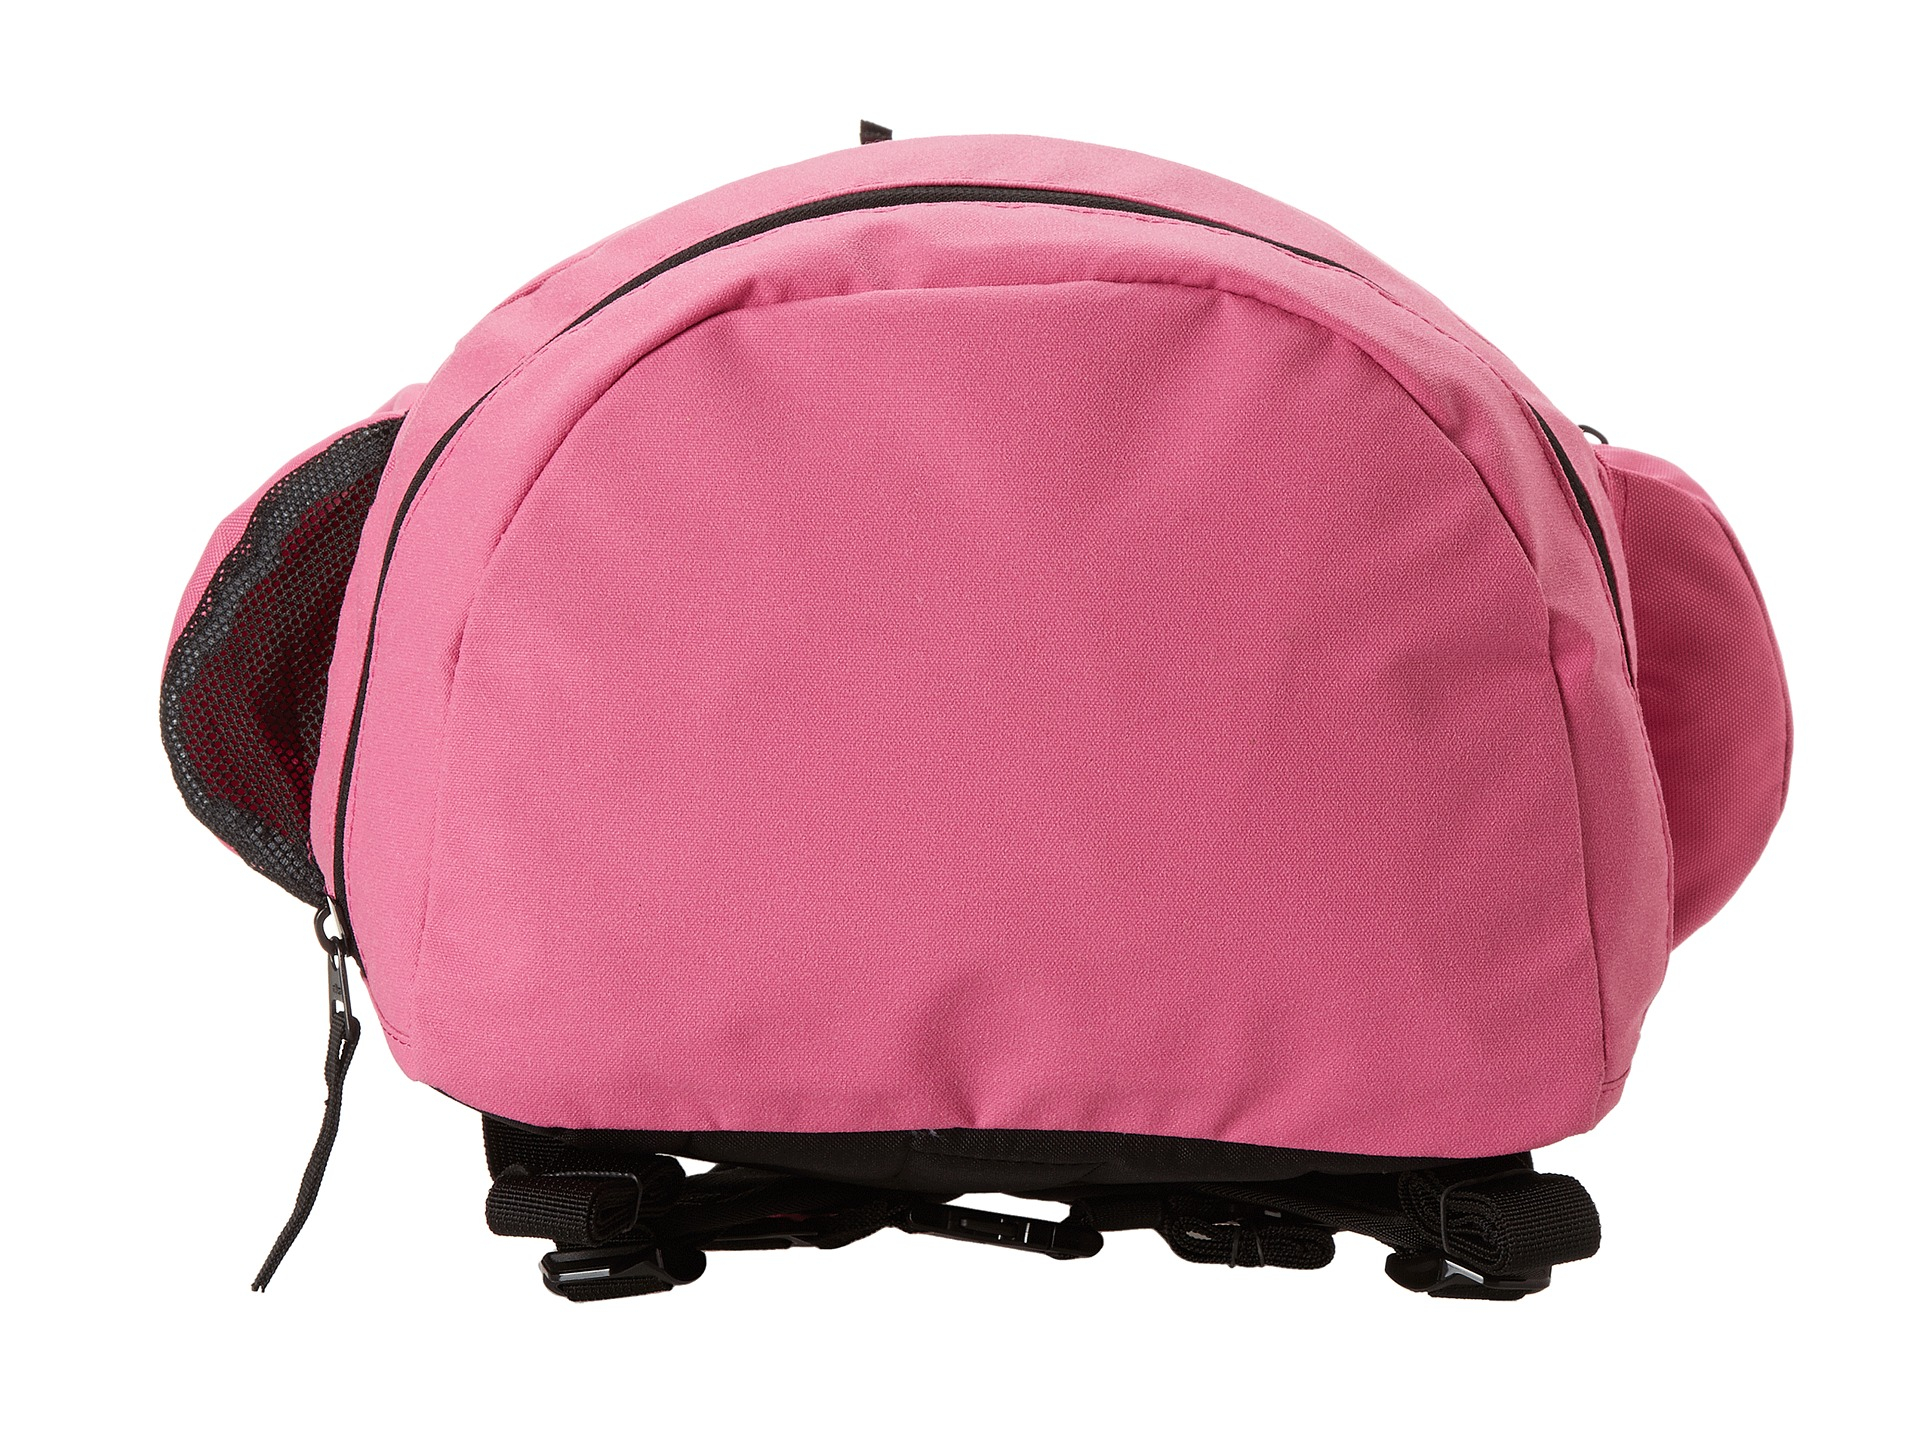 Nike Hoops Elite Team Backpack in Pink | Lyst